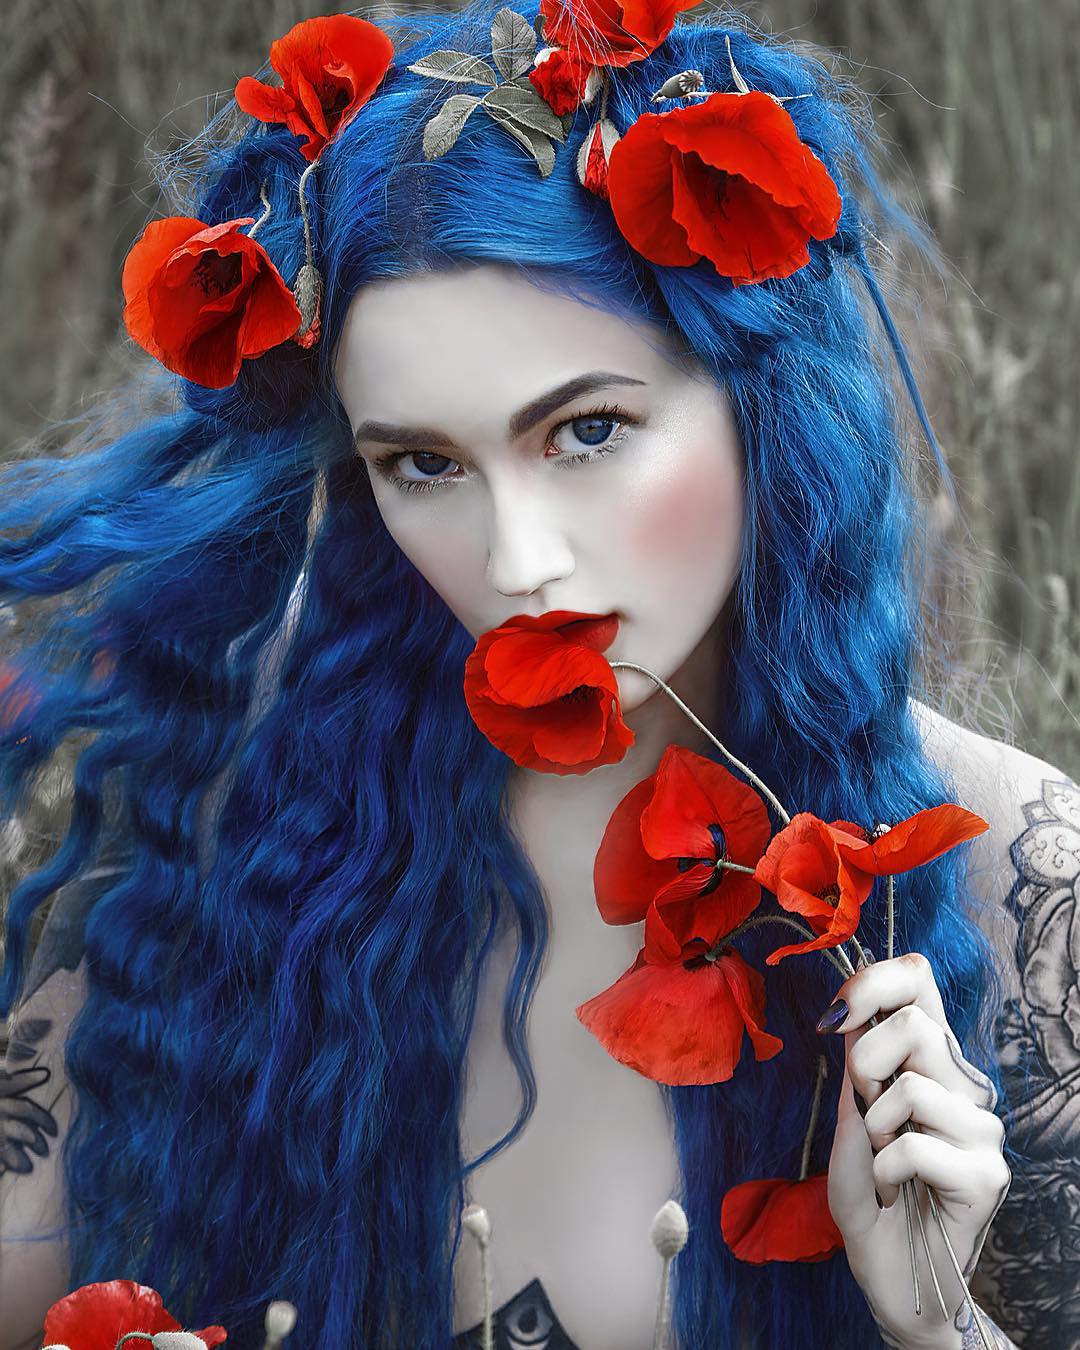 Фото Девушка с голубыми волосами и маками в руке, by Agnieszka Lorek